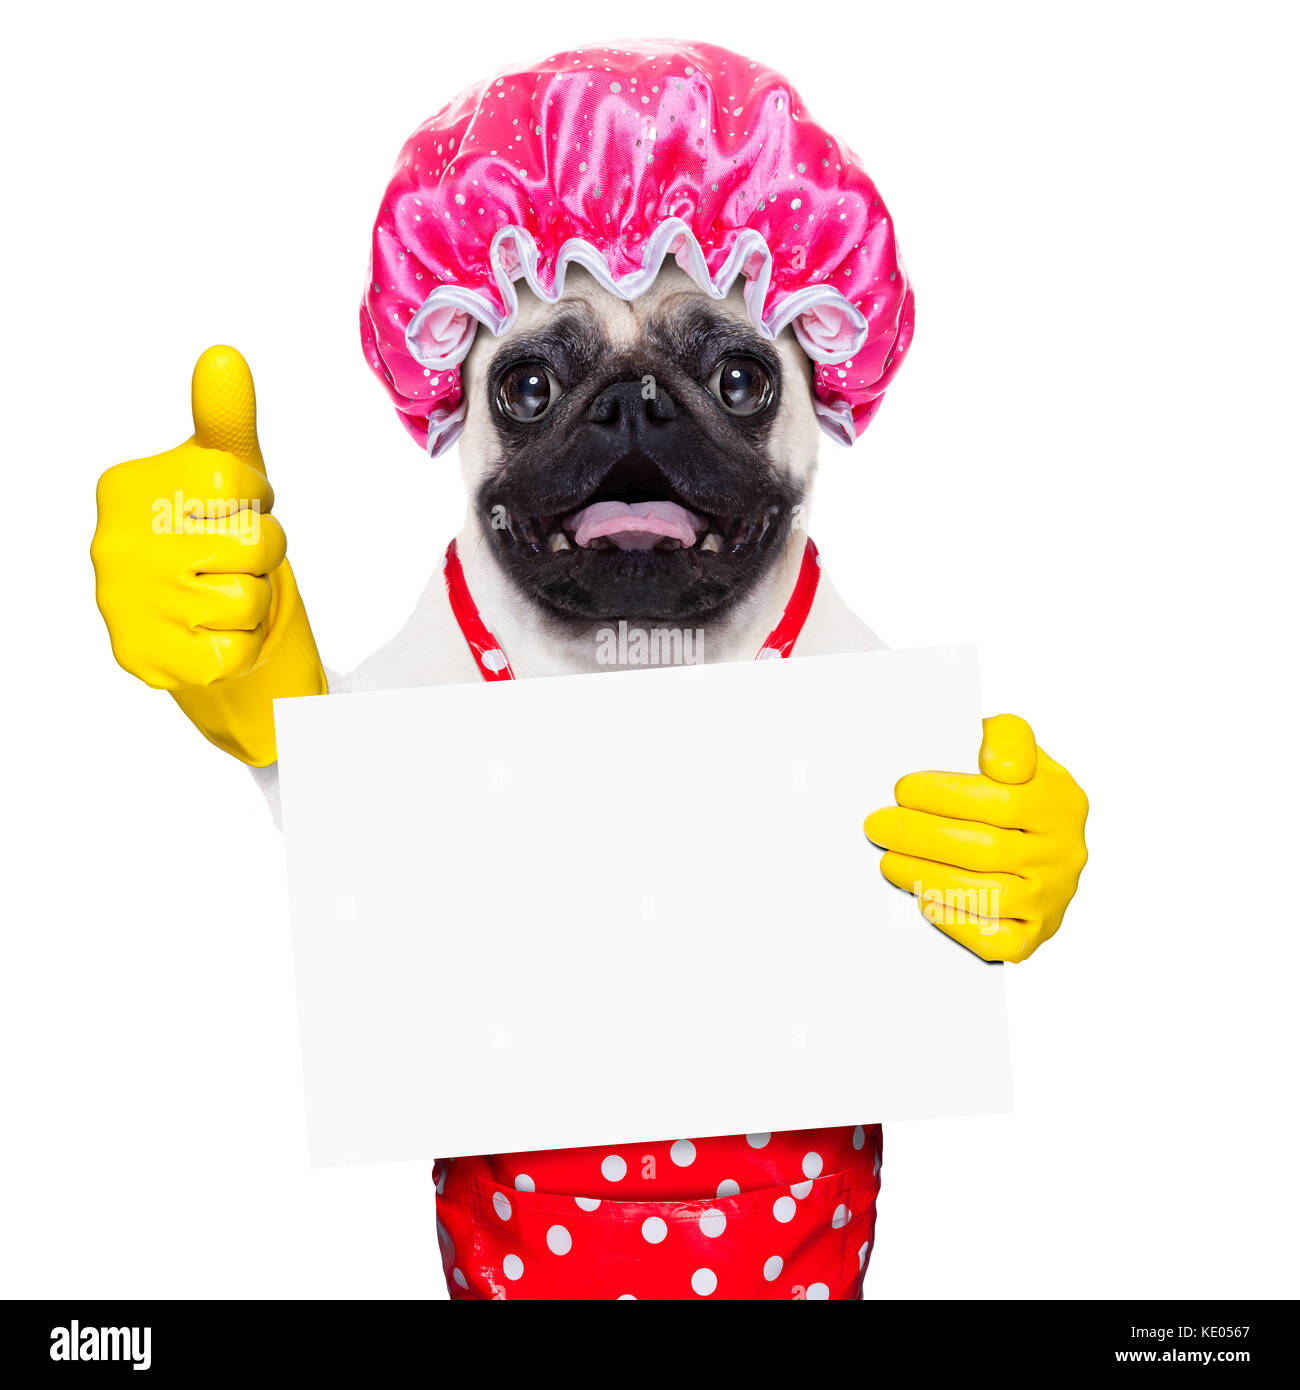 Pug cane fa domestiche con guanti di gomma e la cuffia per la doccia, tenendo un vuoto vuoto lavagna o cartellone, isolato su sfondo bianco Foto Stock